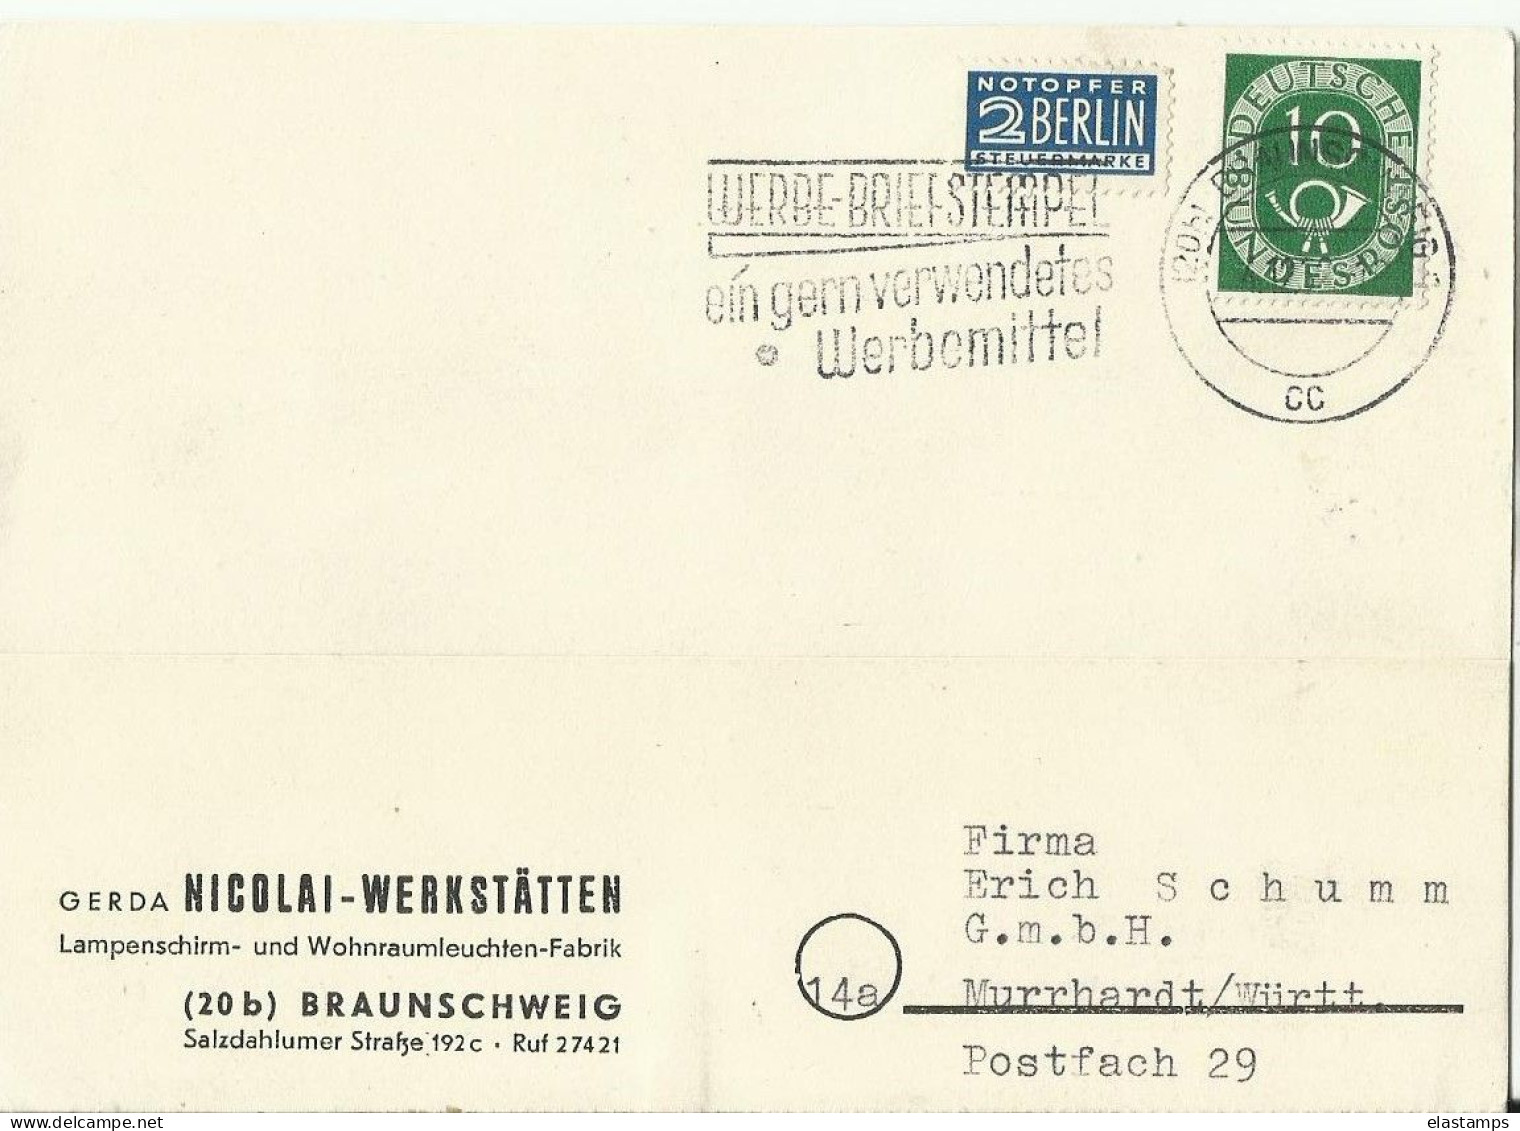 BDR GS 1952 - Postcards - Mint